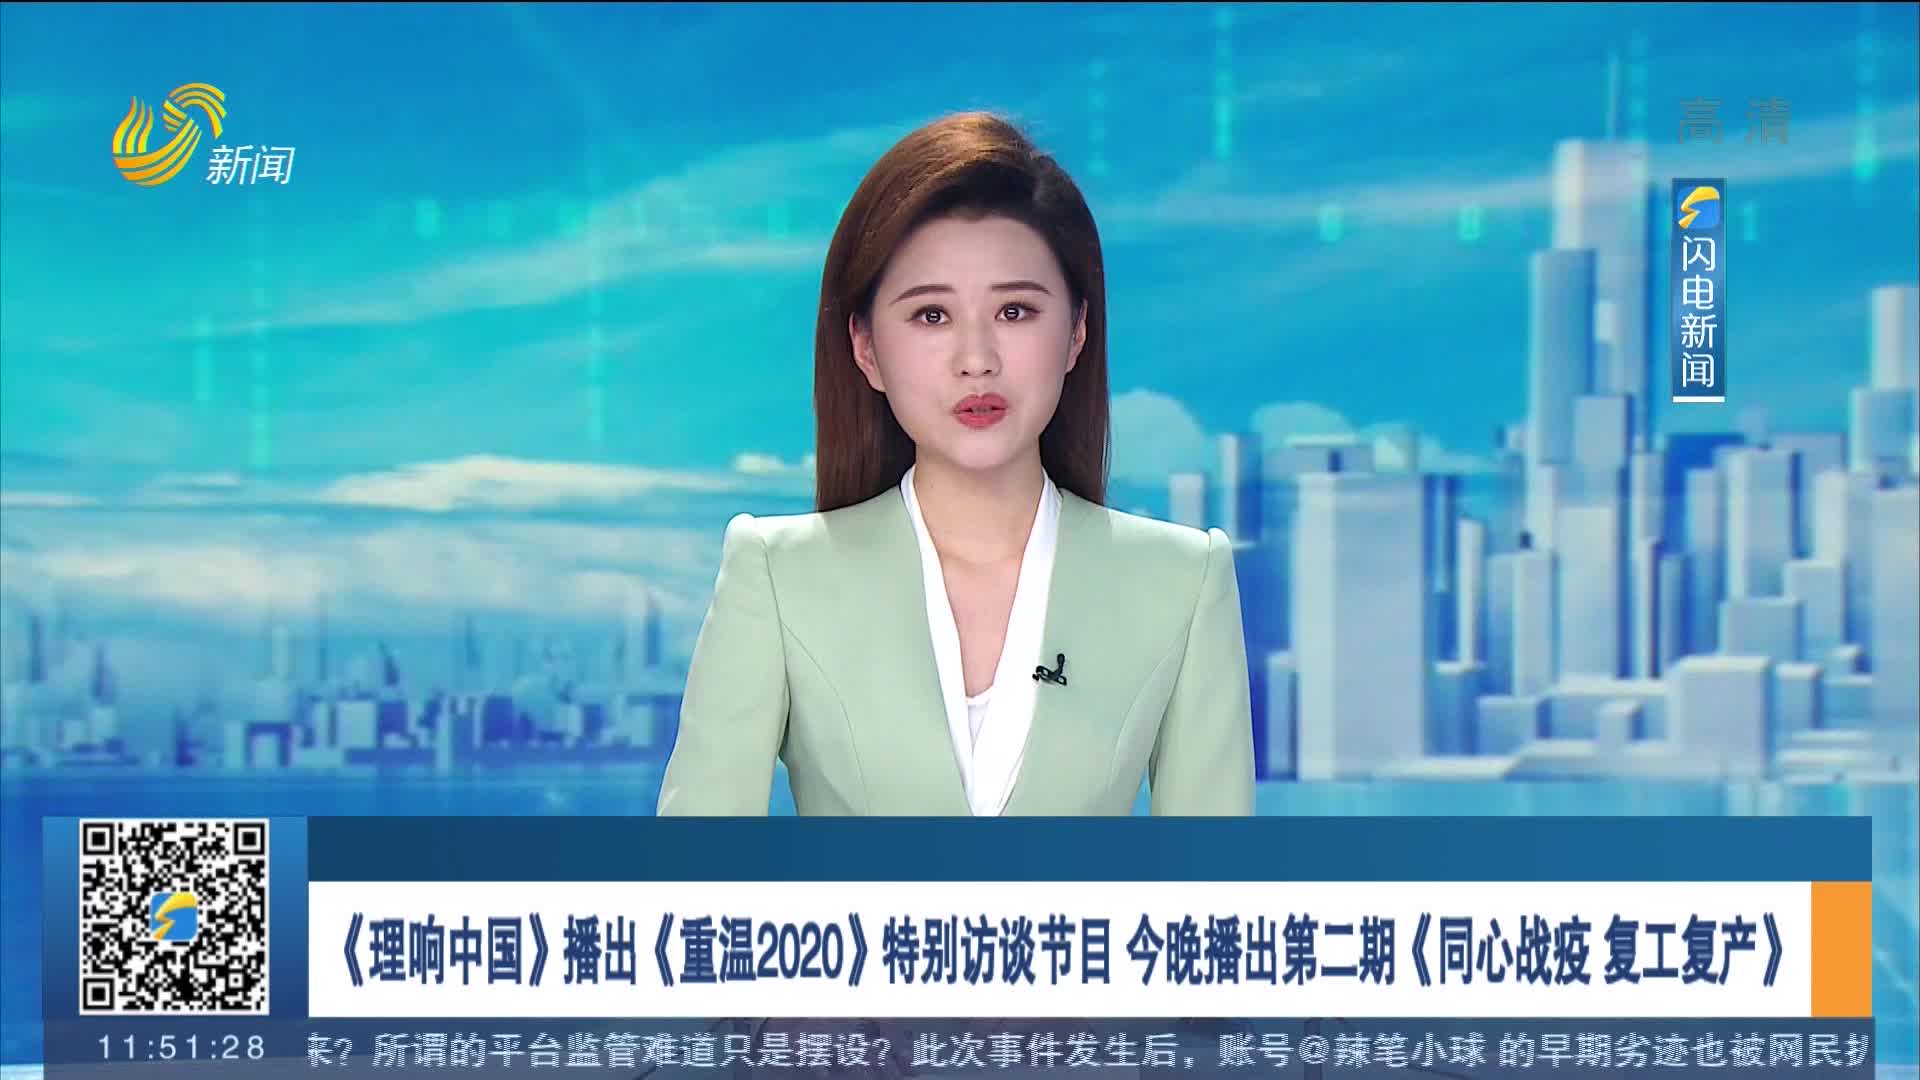 《理响中国》播出《重温2020》特别访谈节目 今晚播出第二期《同心战疫 复工复产》